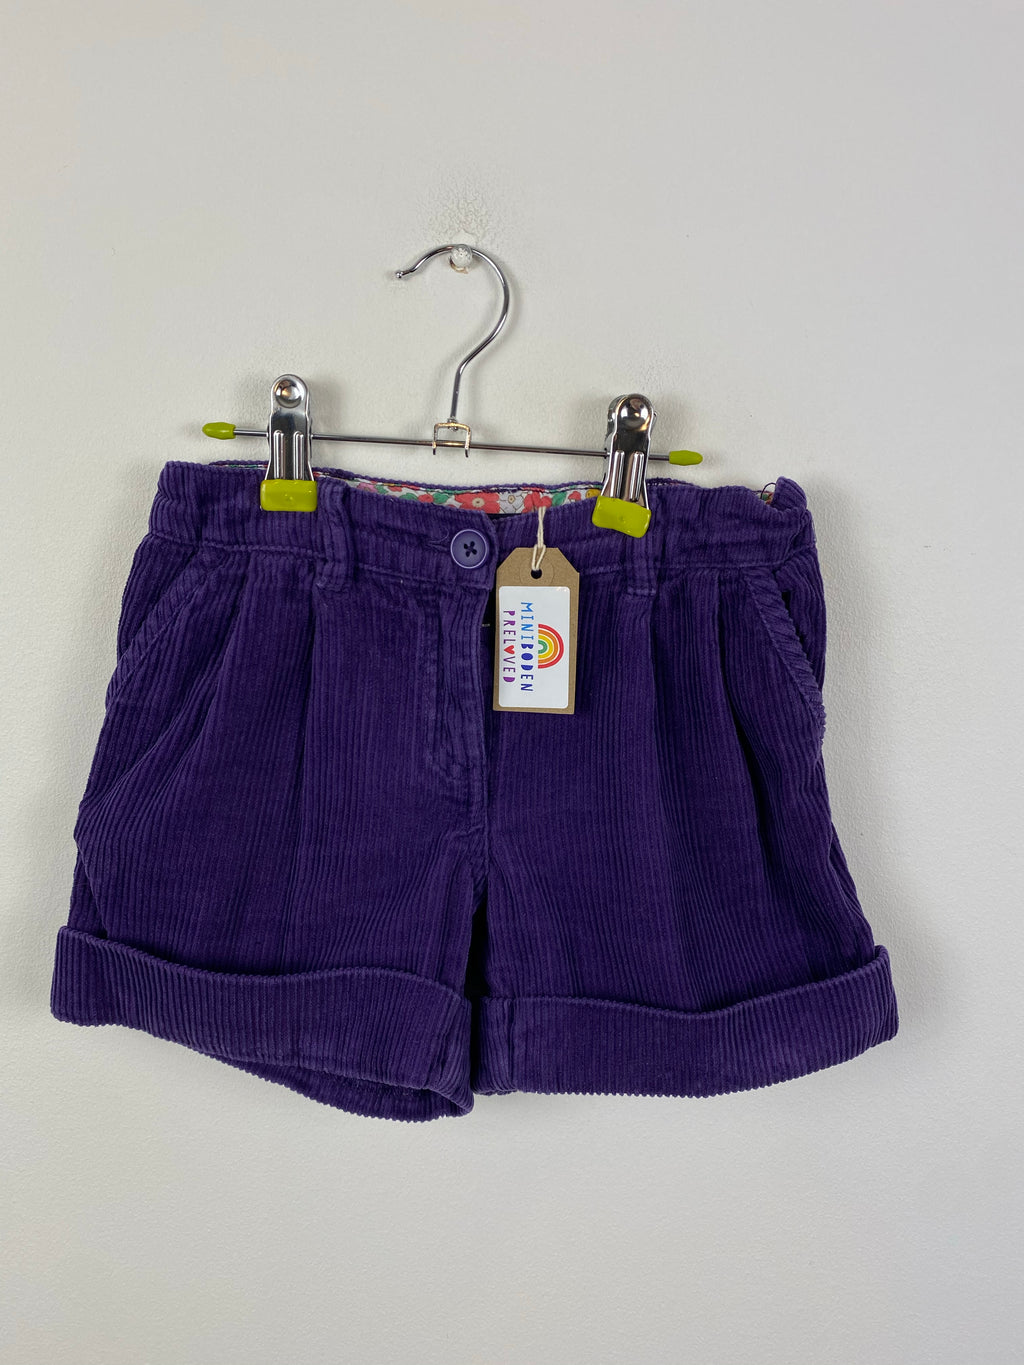 Cadbury's Purple Cord Shorts (6 Years)